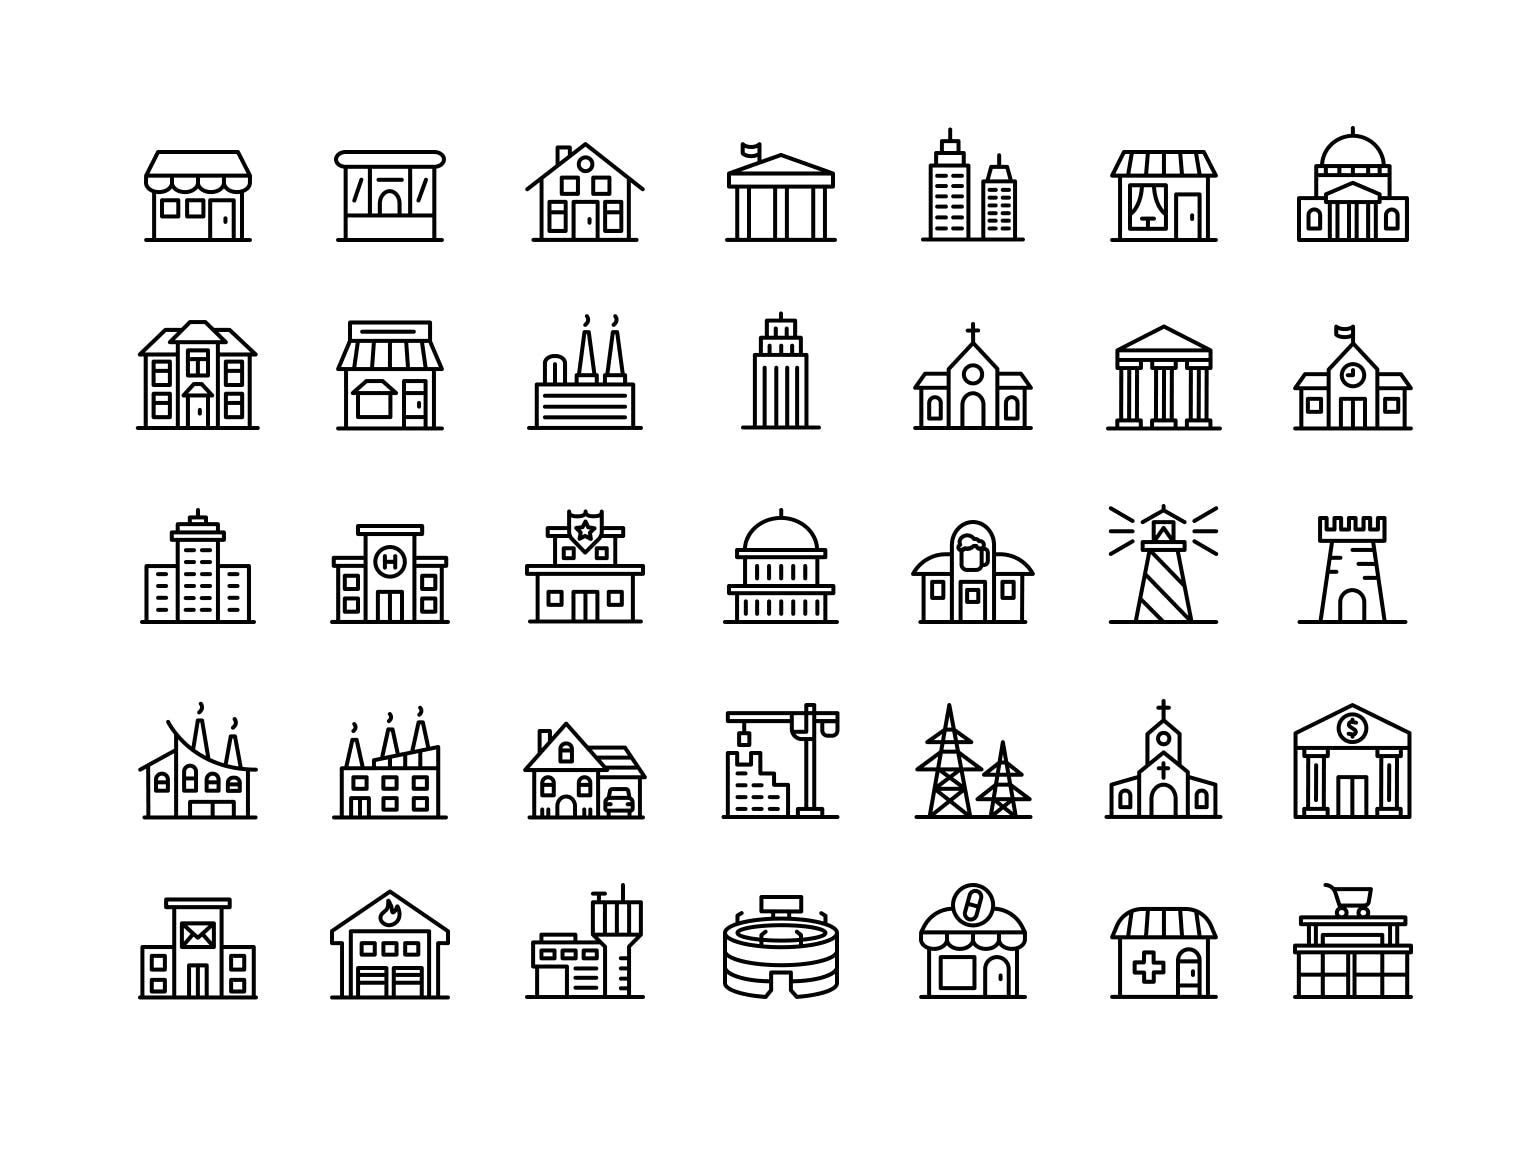 建筑图形矢量图标素材下载 Buildings – Icons Pack插图(1)